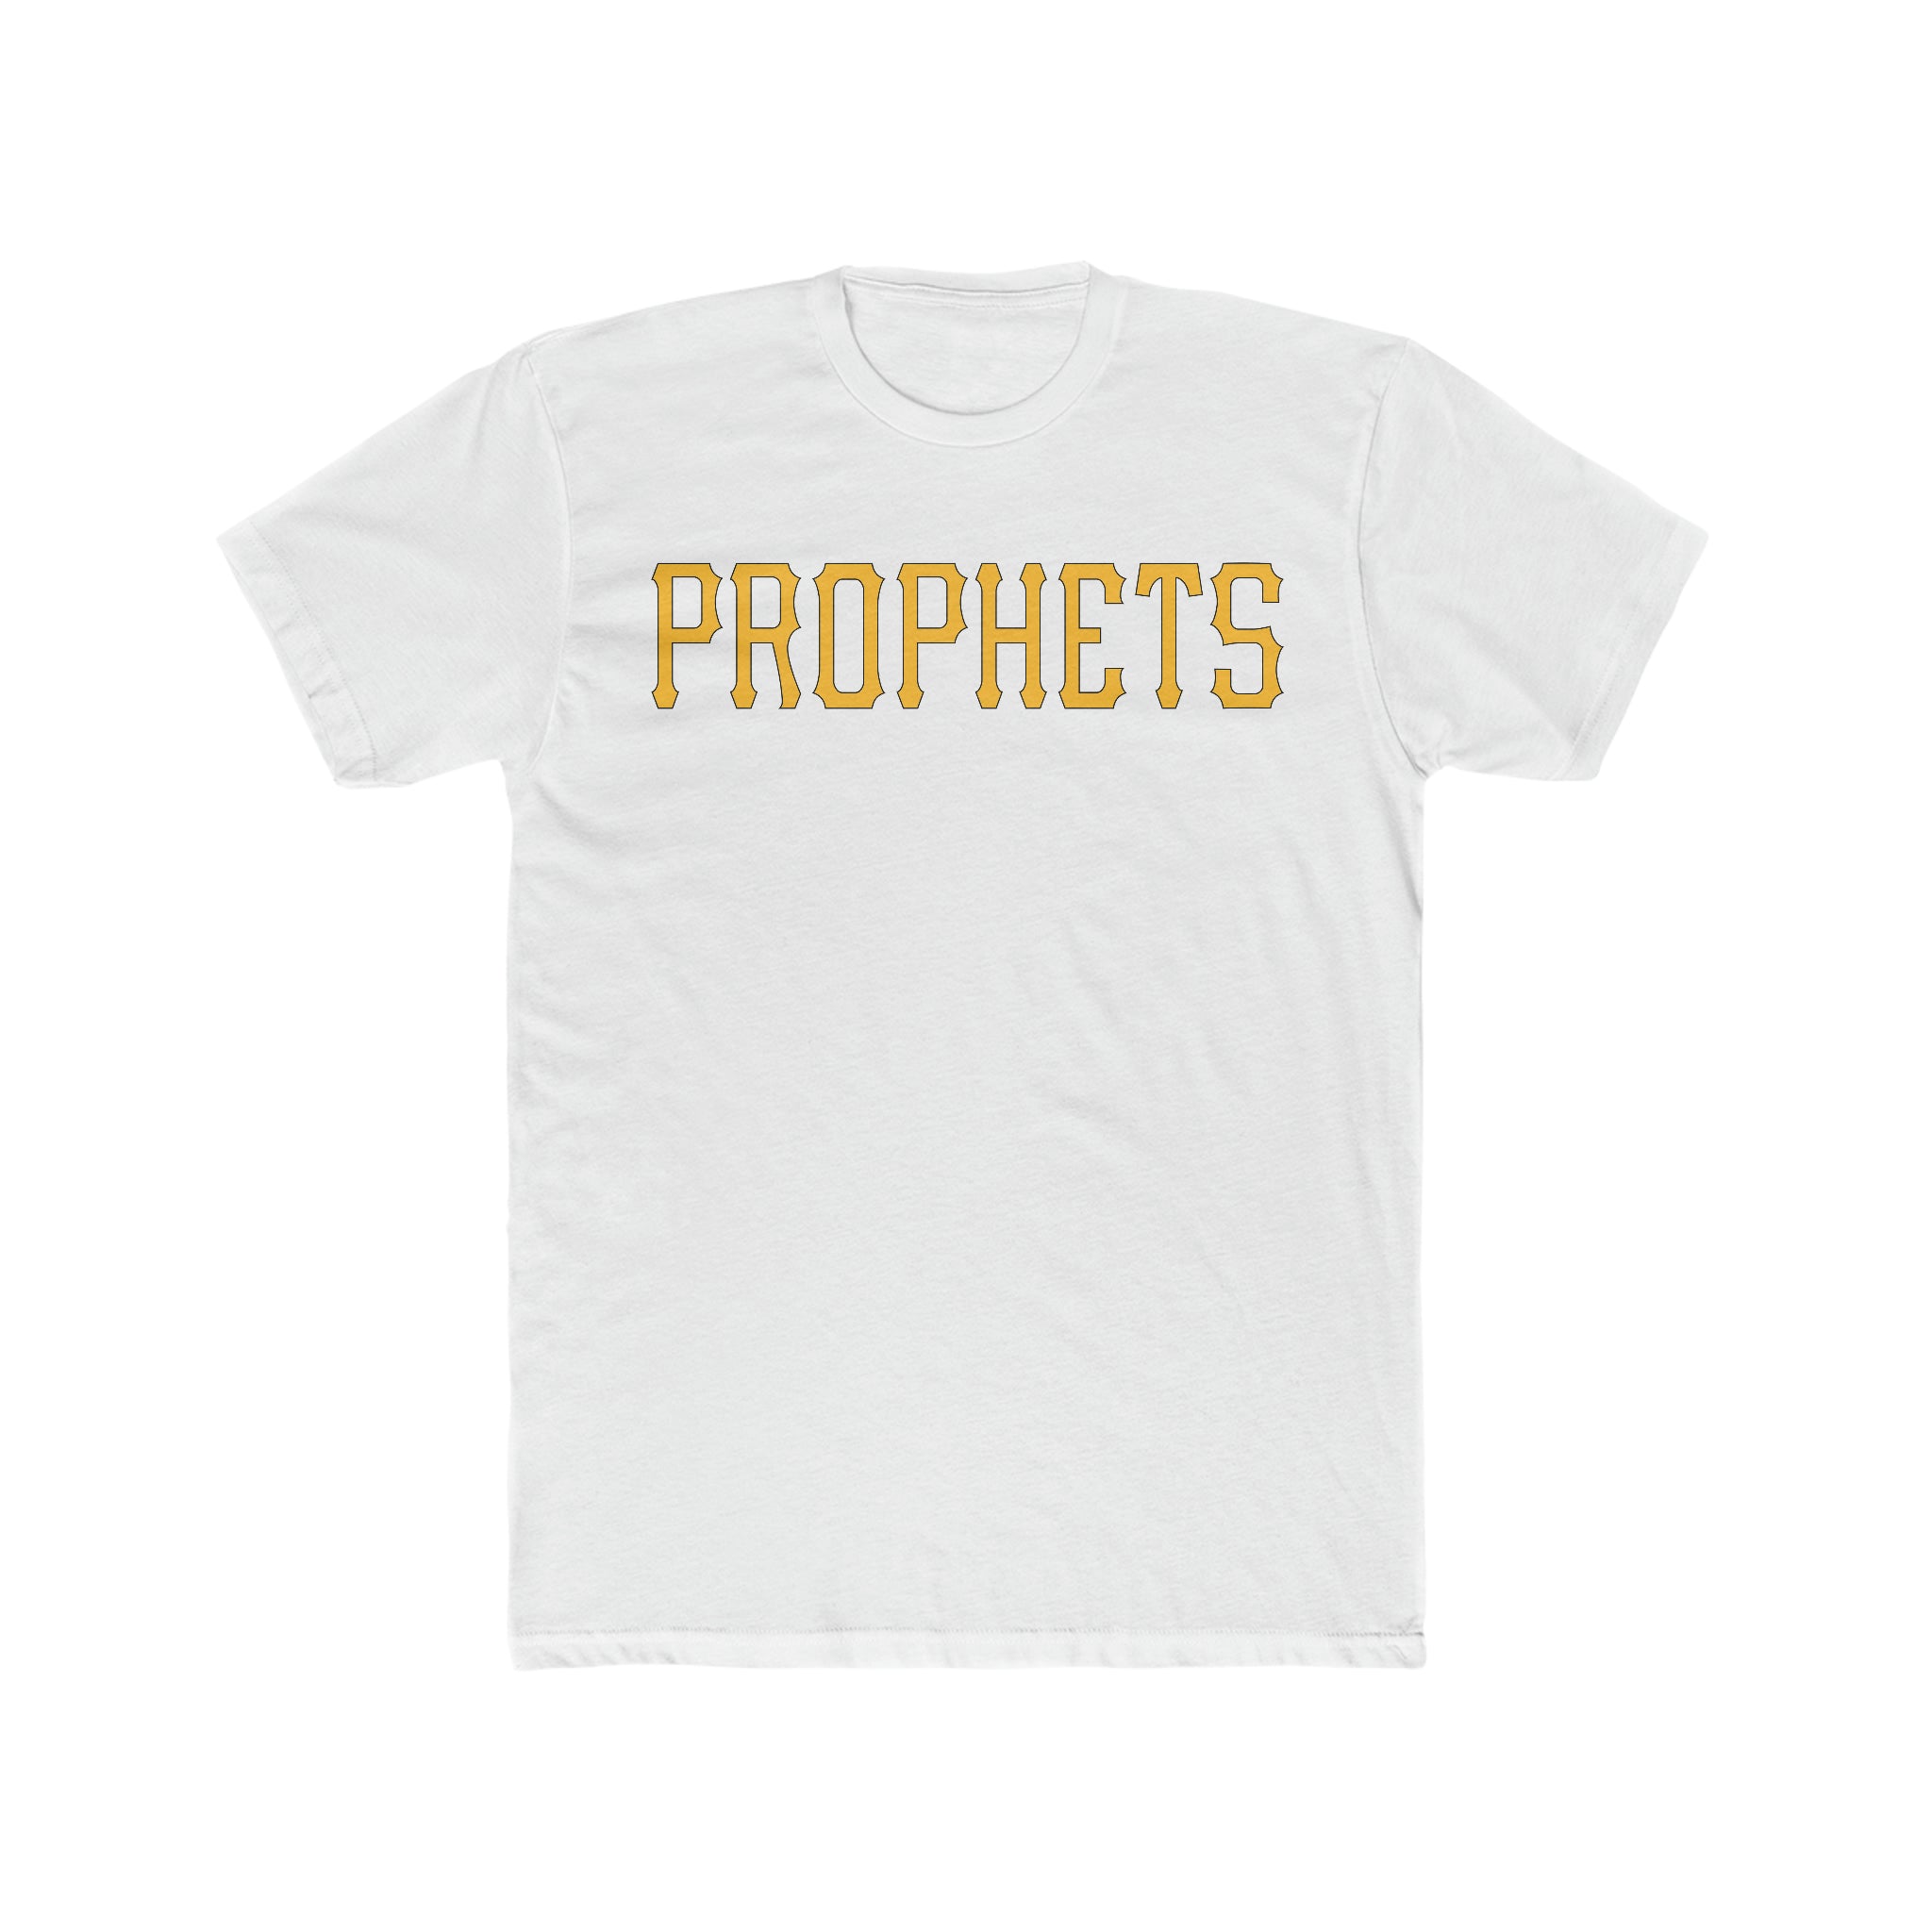 PROPHETS TEE